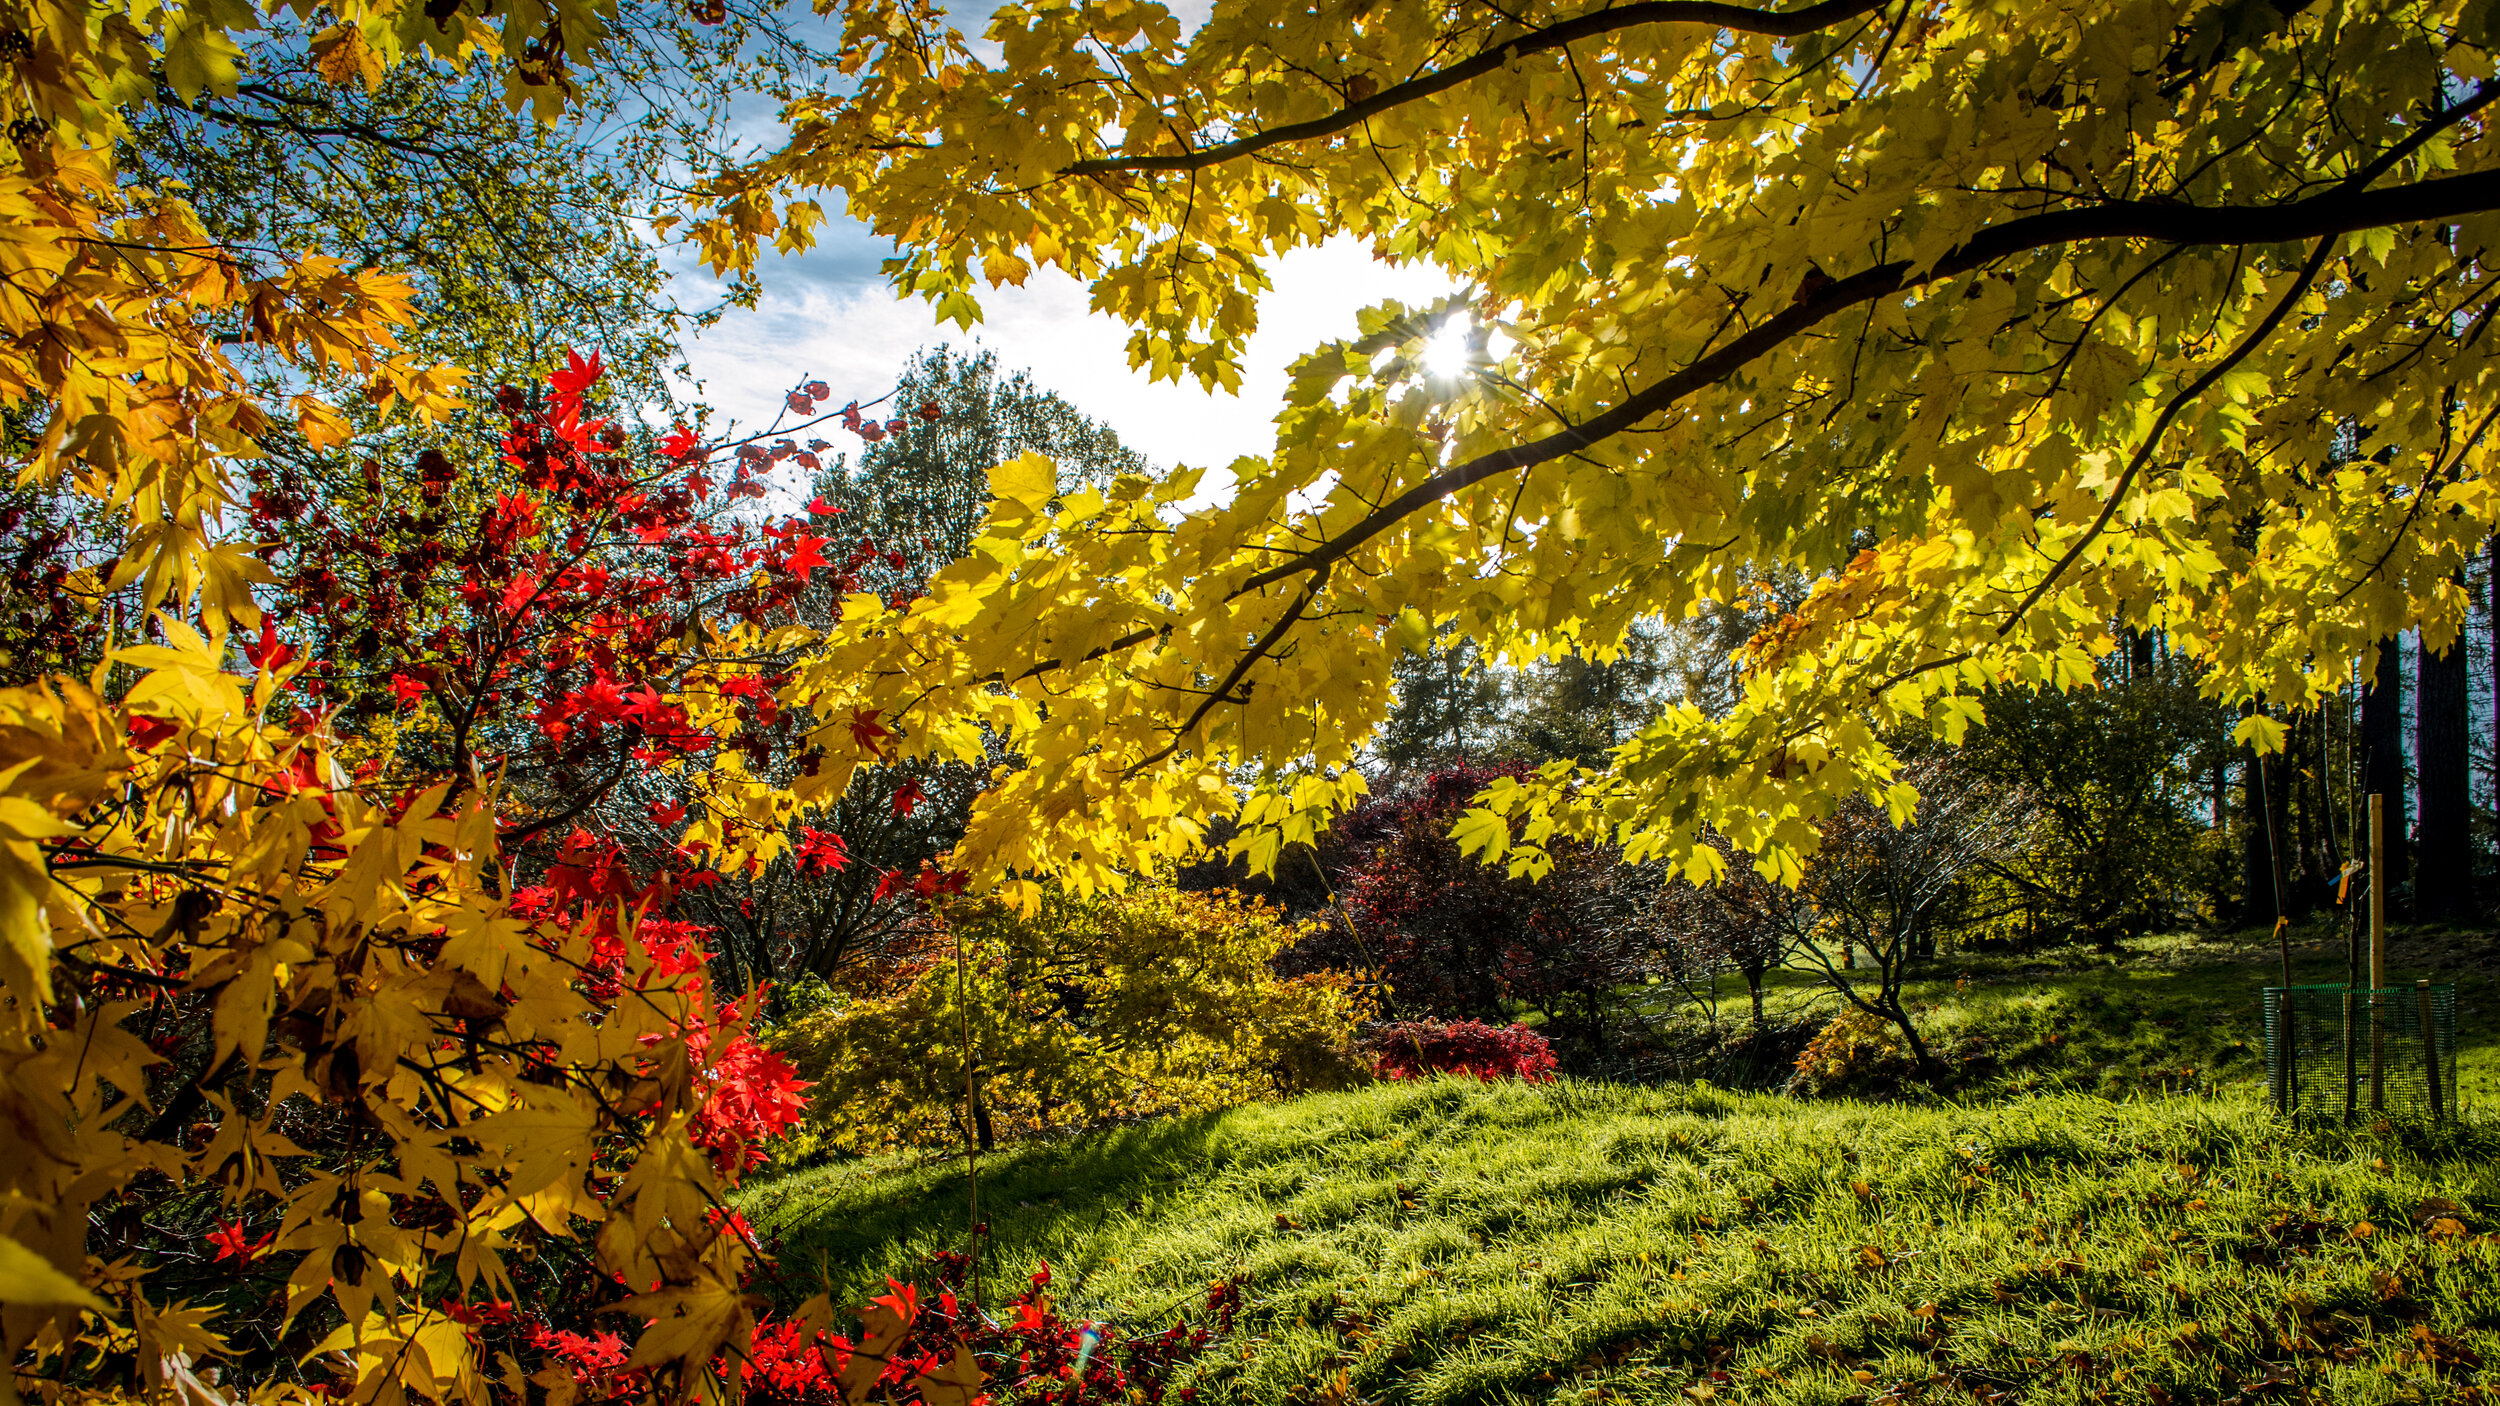 Autumn Spectacular at the Yorkshire Arboretum